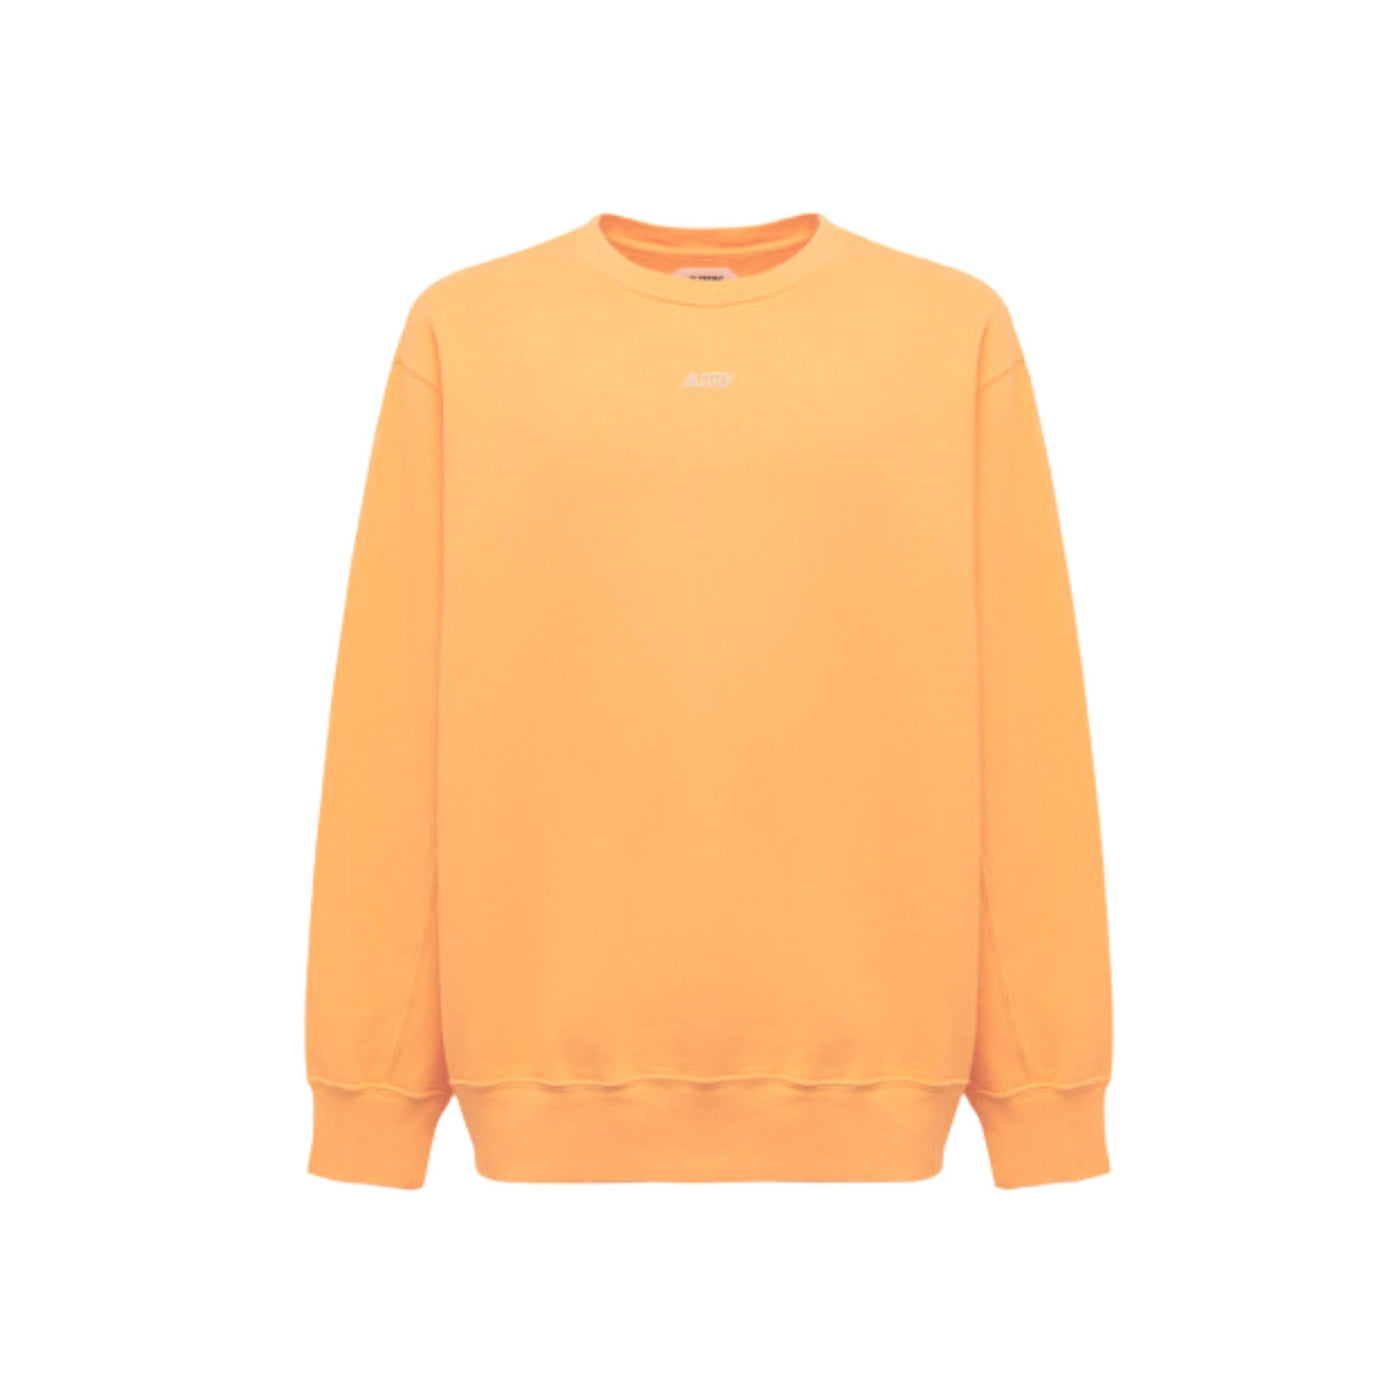 Men's sweatshirt in pure orange cotton